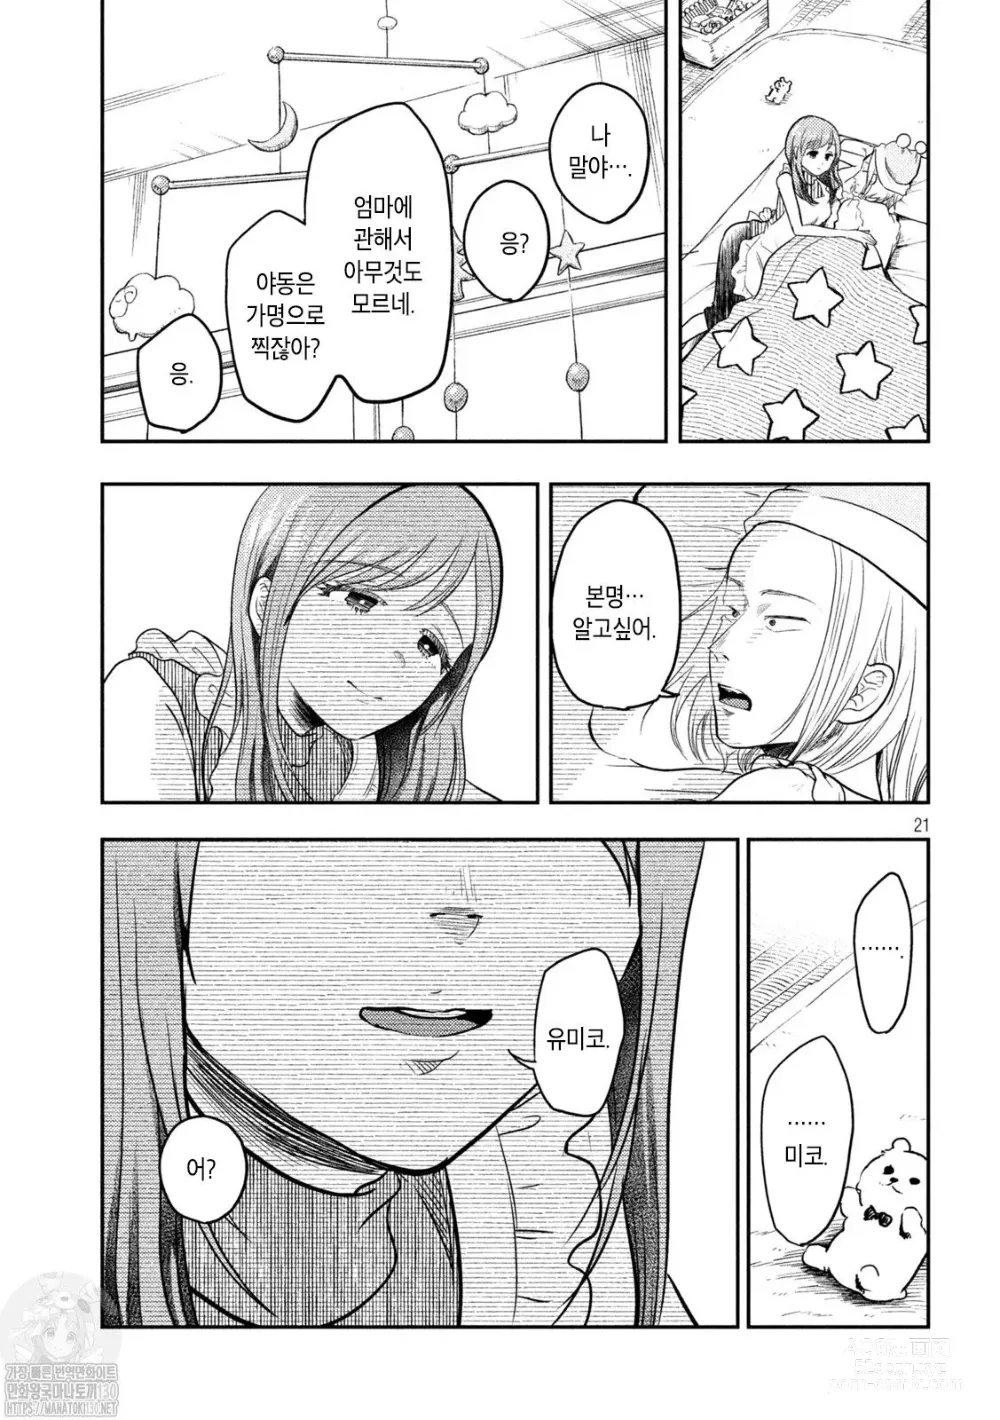 Page 21 of manga Haha wa Tsuyoi.